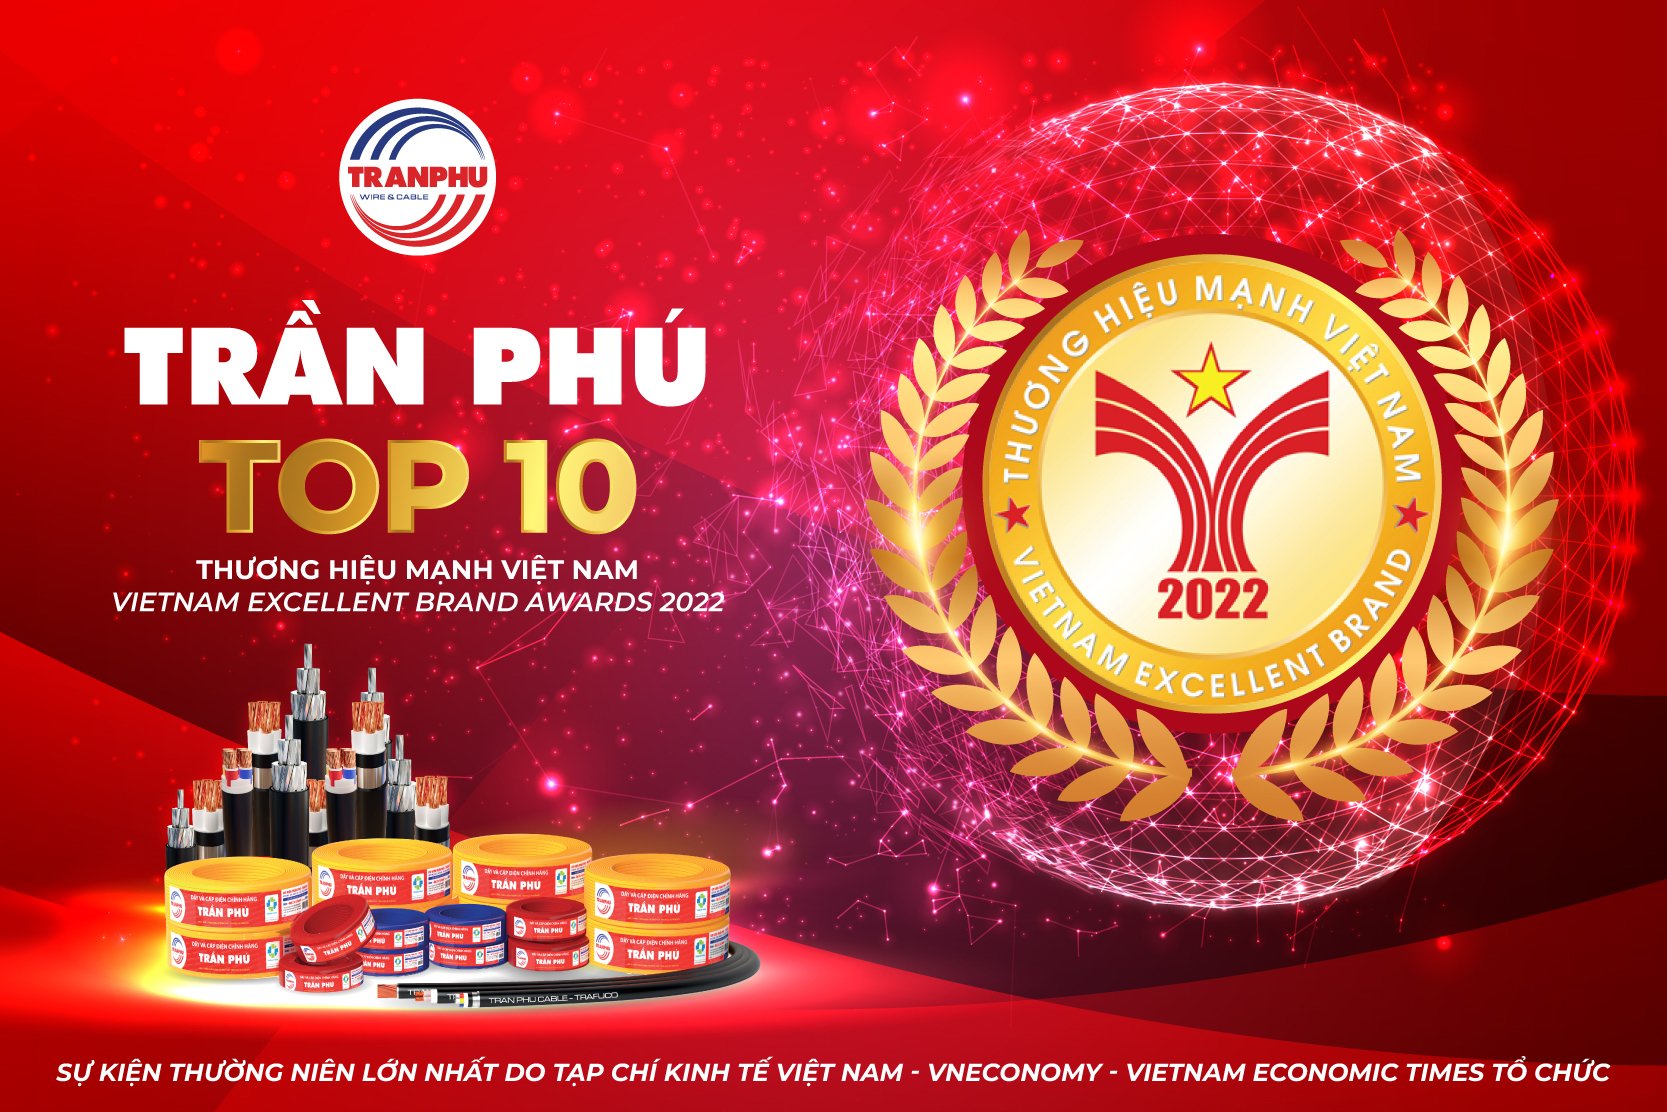 Top 10 thương hiệu mạnh Việt Nam 2022